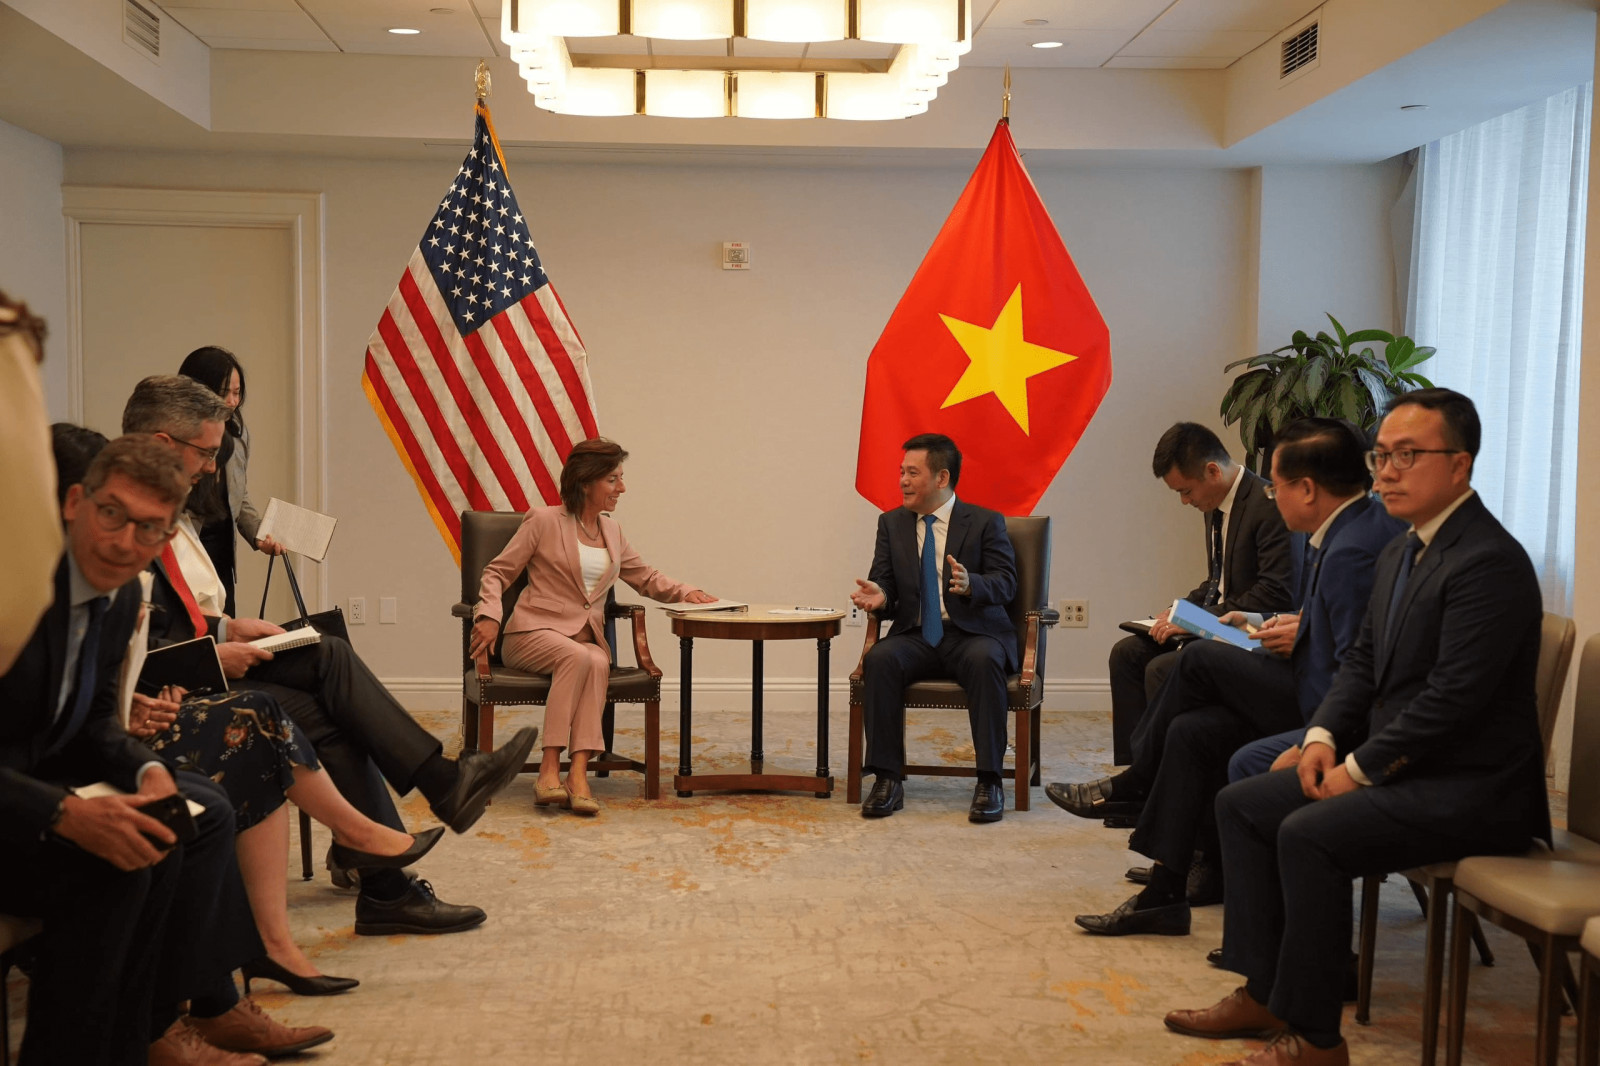 Ngày 19/9/2023, Bộ trưởng Nguyễn Hồng Diên có cuộc làm việc với bà Gina Raimondo, Bộ trưởng Bộ Thương mại Hoa Kỳ (DOC). Bộ trưởng đề nghị DOC sẽ xem xét kỹ lưỡng các ý kiến của Việt Nam nhằm đảm bảo tính công bằng, khách quan, minh bạch cho hoạt động giao thương của doanh nghiệp hai nước.